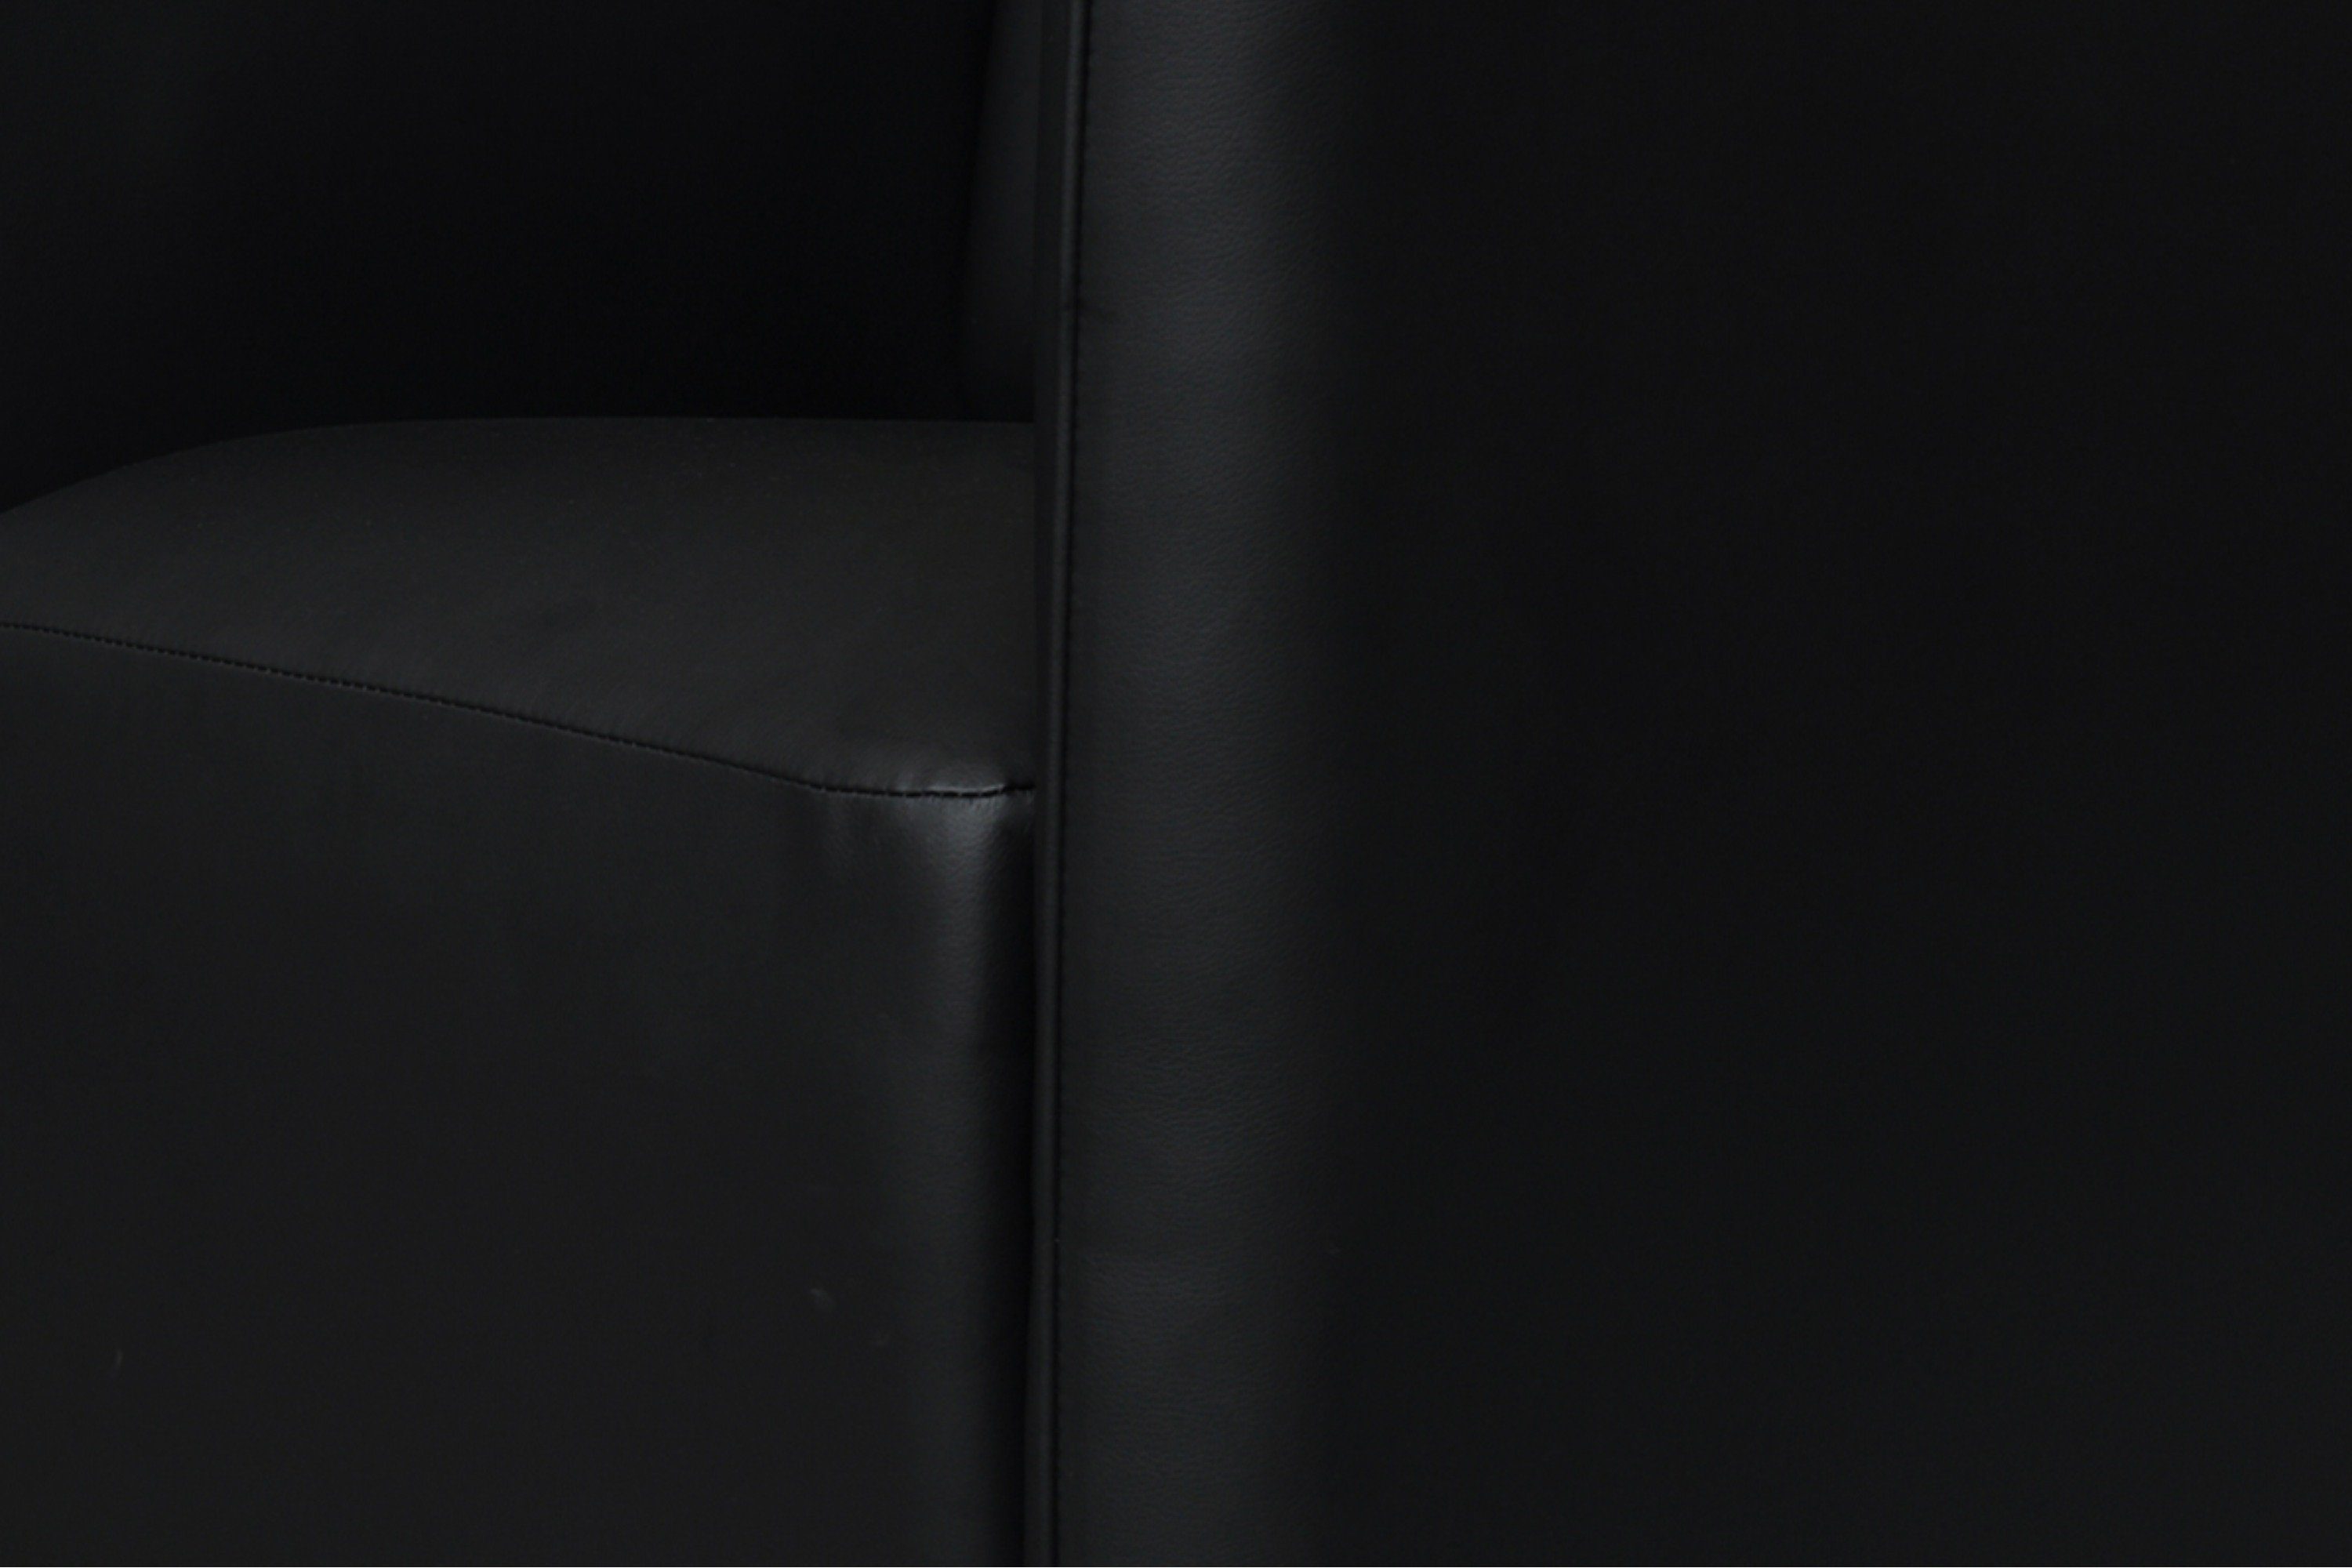 UMBO Cocktailsessel ideal kleine im schwarz Sessel, | Hochelastischer schwarz für Zimmer, Schaumstoff Konsimo Sitz